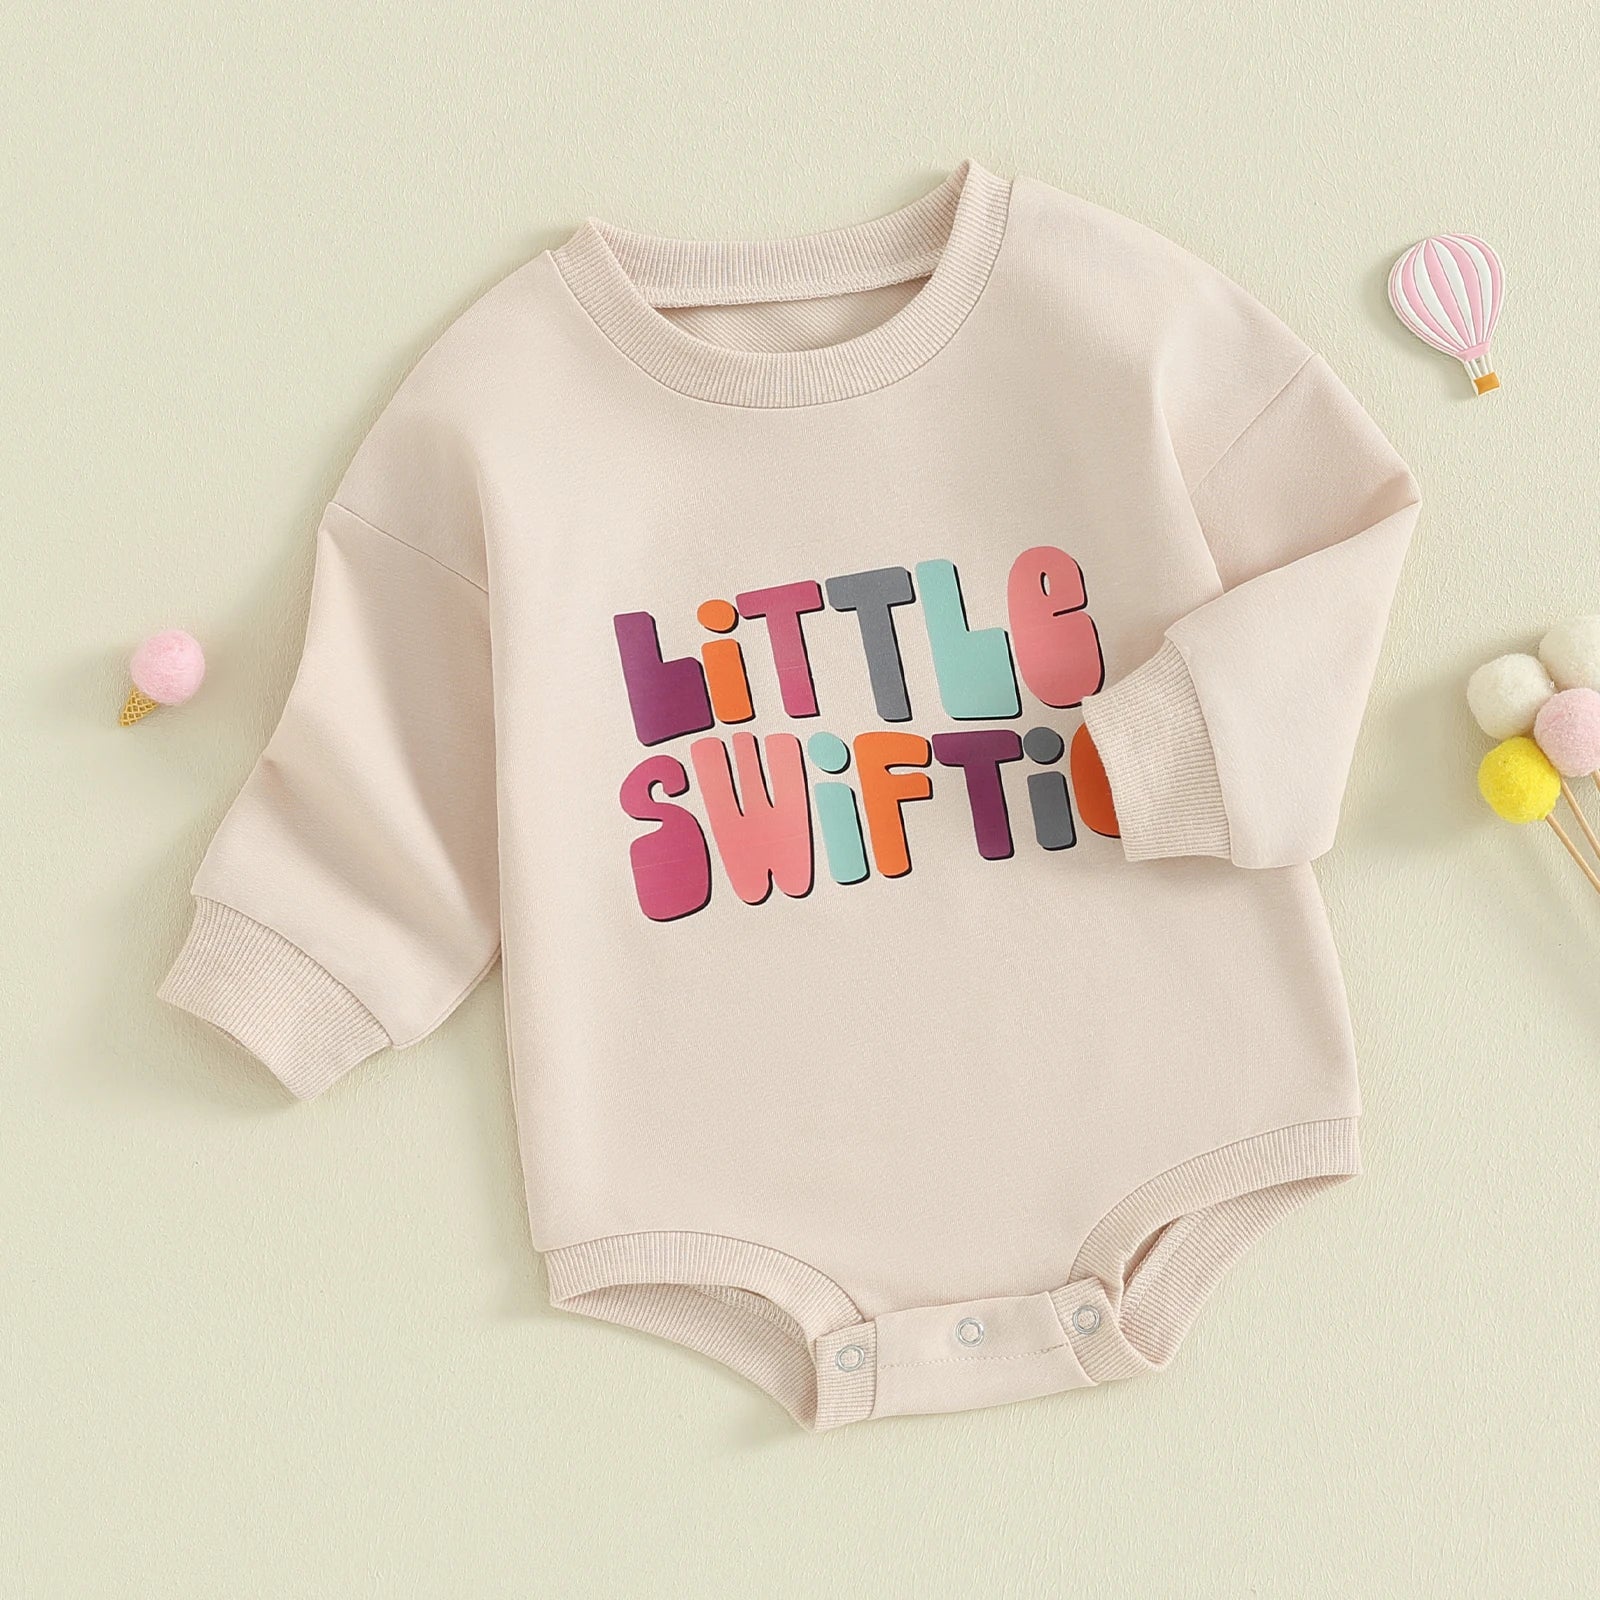 Long Sleeve Little Swiftie Baby Bodysuit